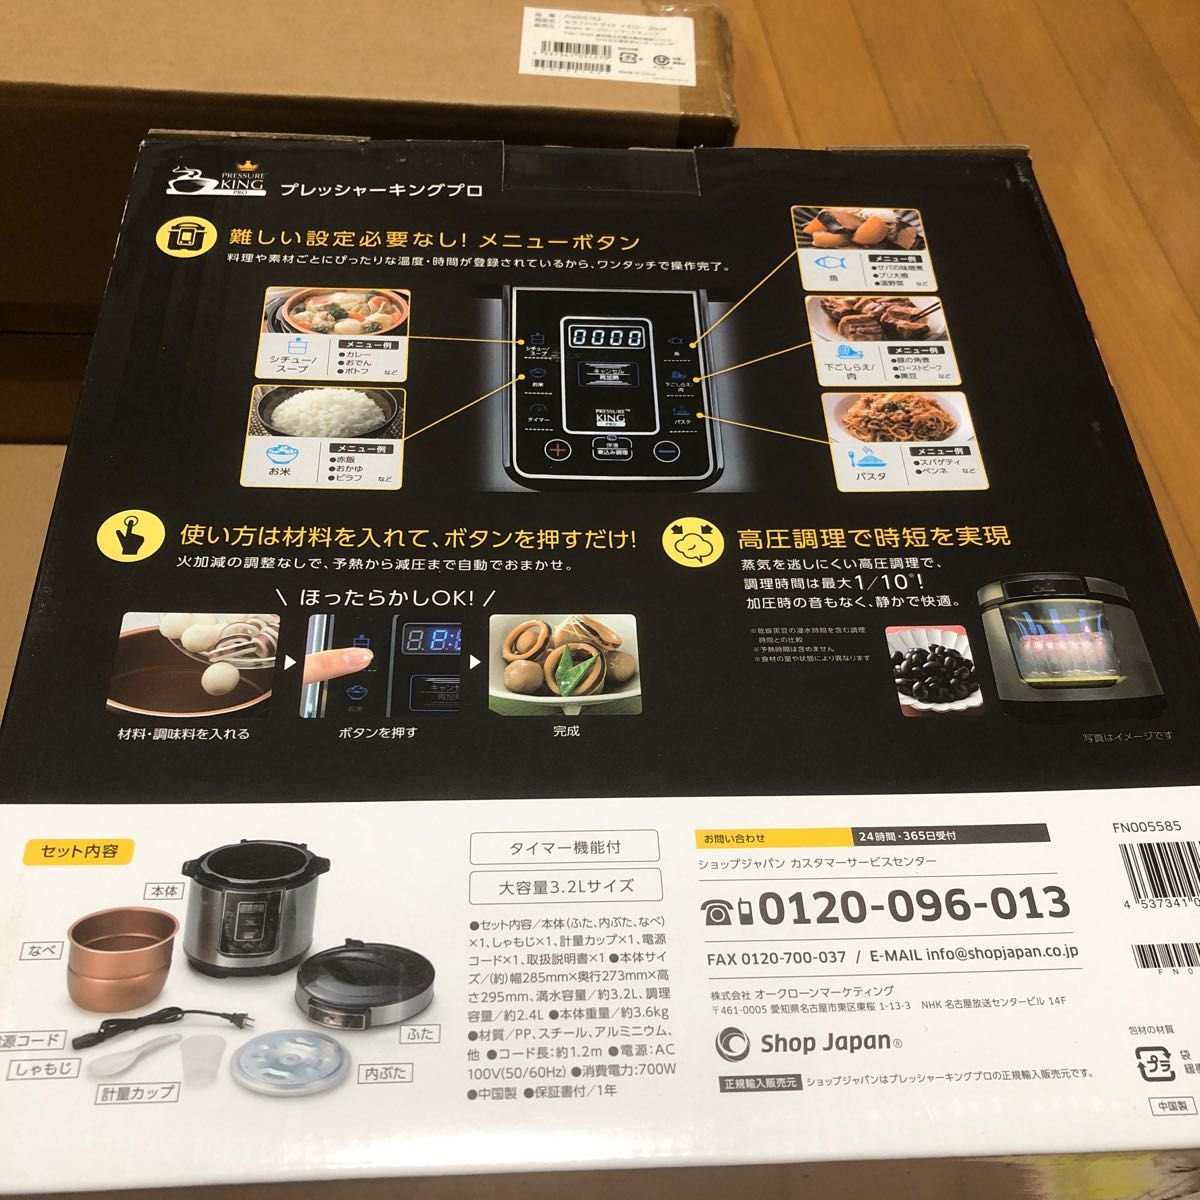 【新品未使用完品】shop Japan ショップジャパン プレッシャーキングプロ 電気圧力鍋 3.2L その他調理器具3点セット